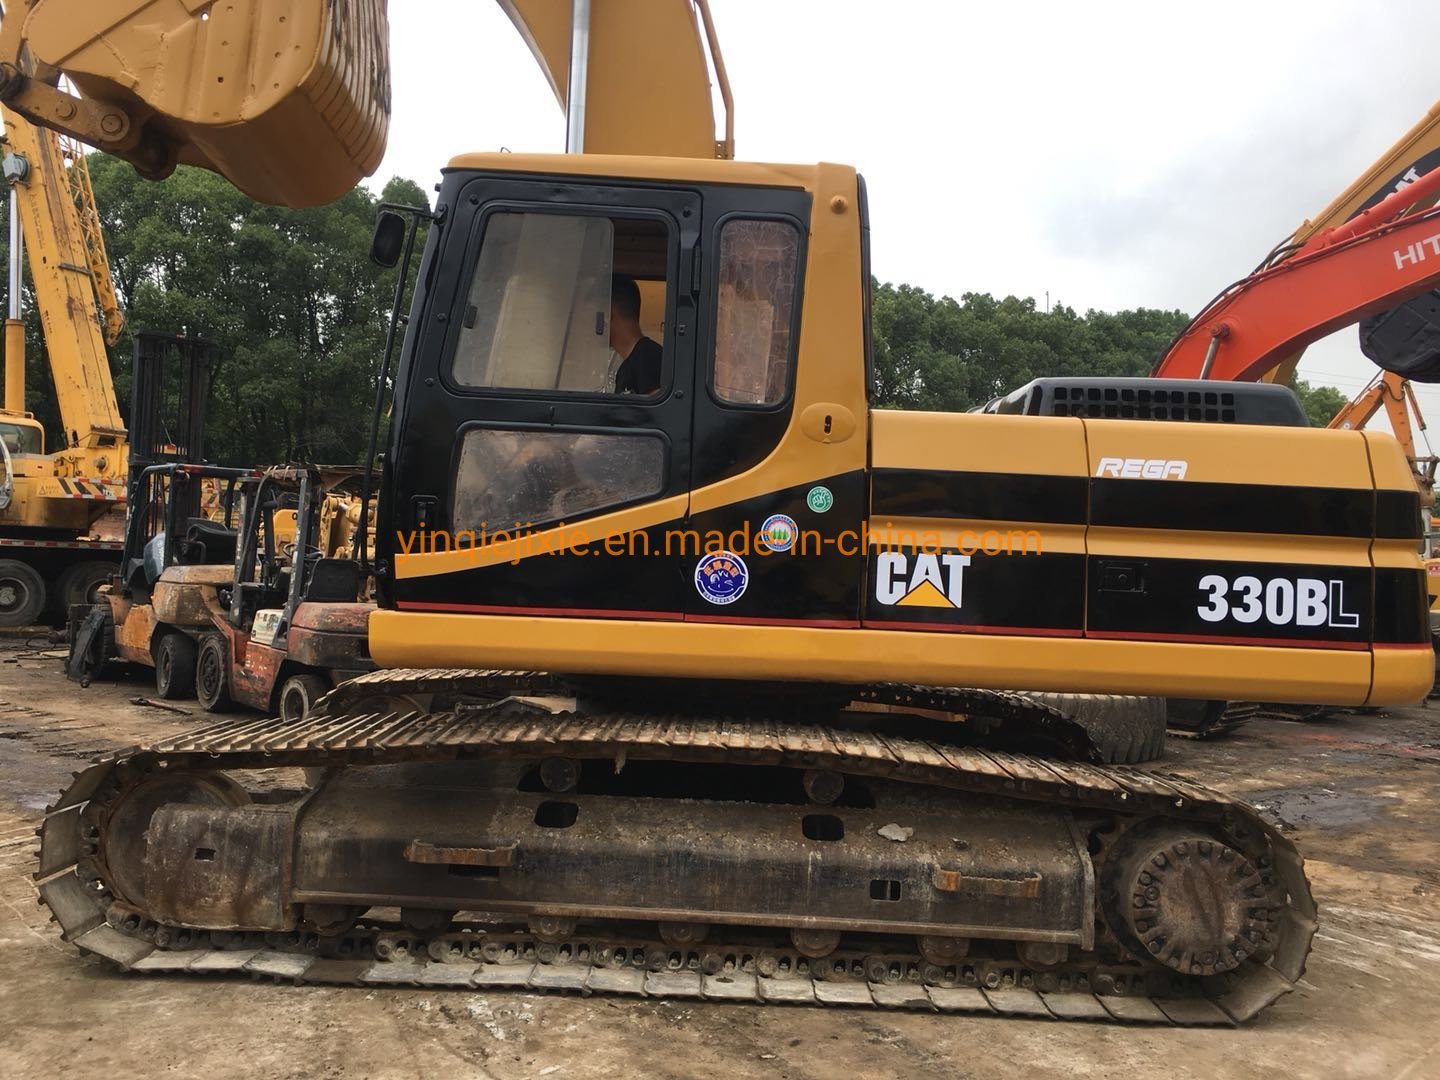 Used Cat 330bl Excavator (Caterpillar 330BL) Used Caterpillar Excavators Cat 330bl